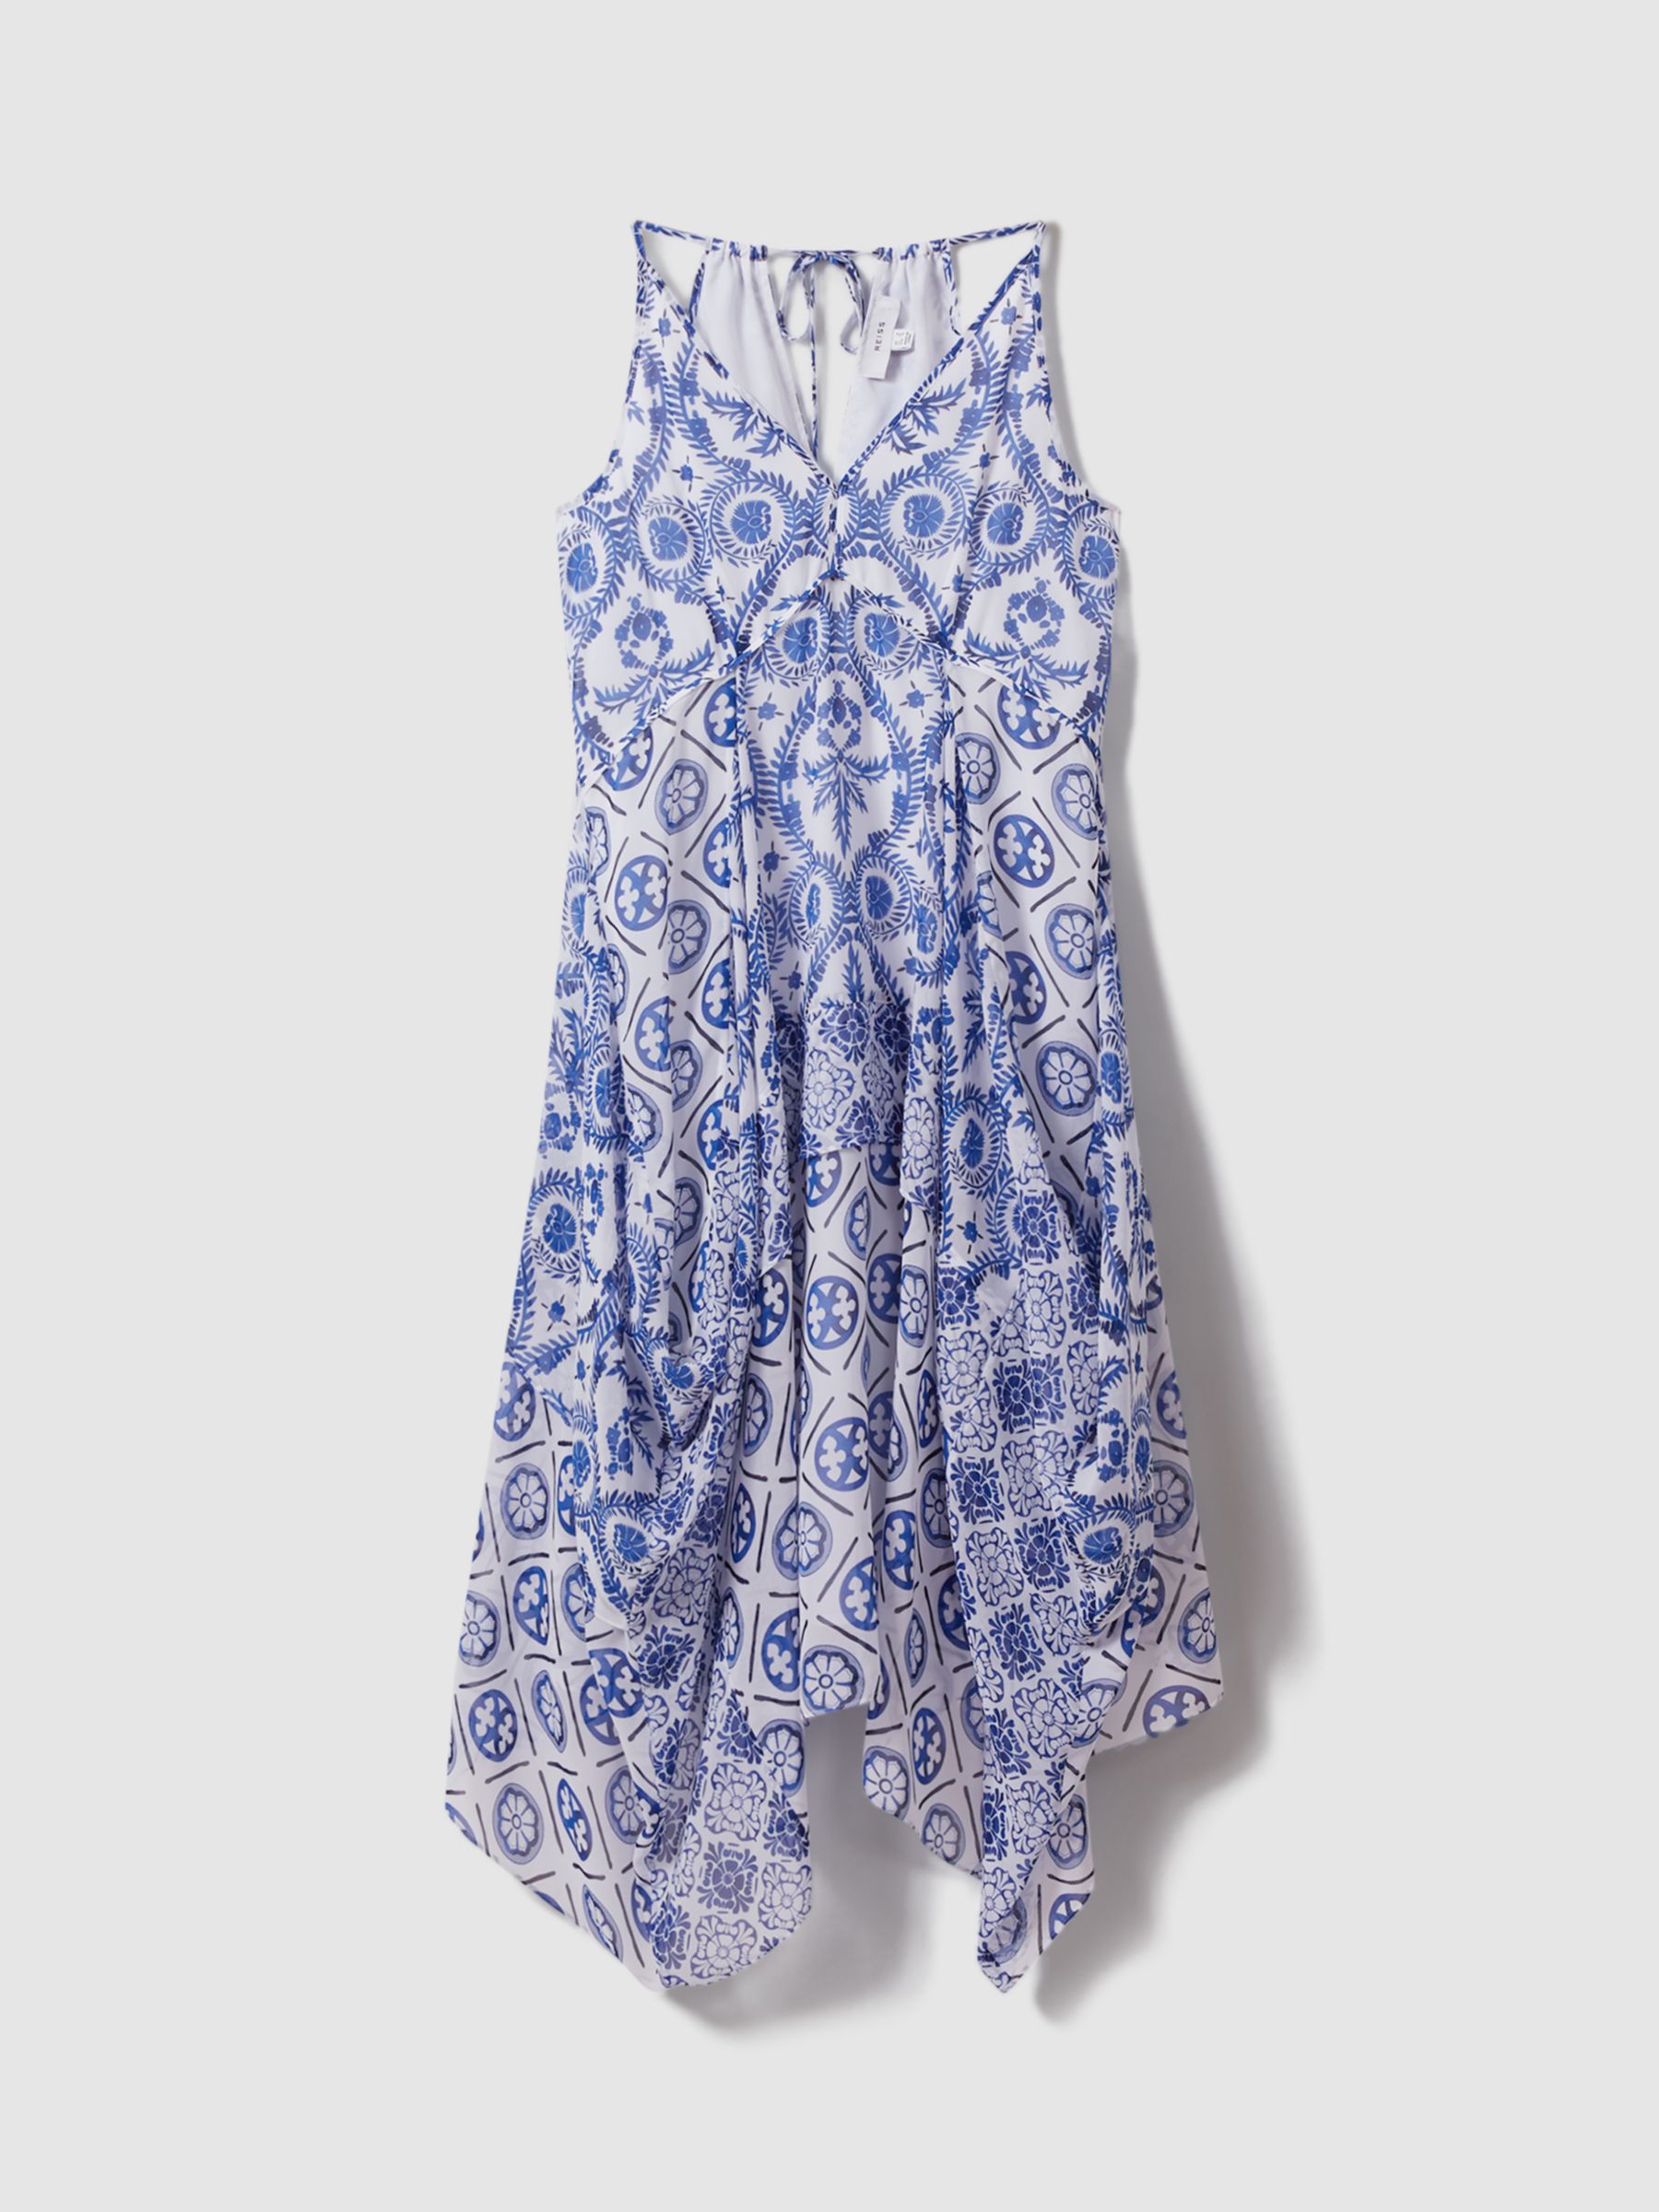 Reiss Tiller Tile Print Halterneck Midi Dress, Blue/White, 6